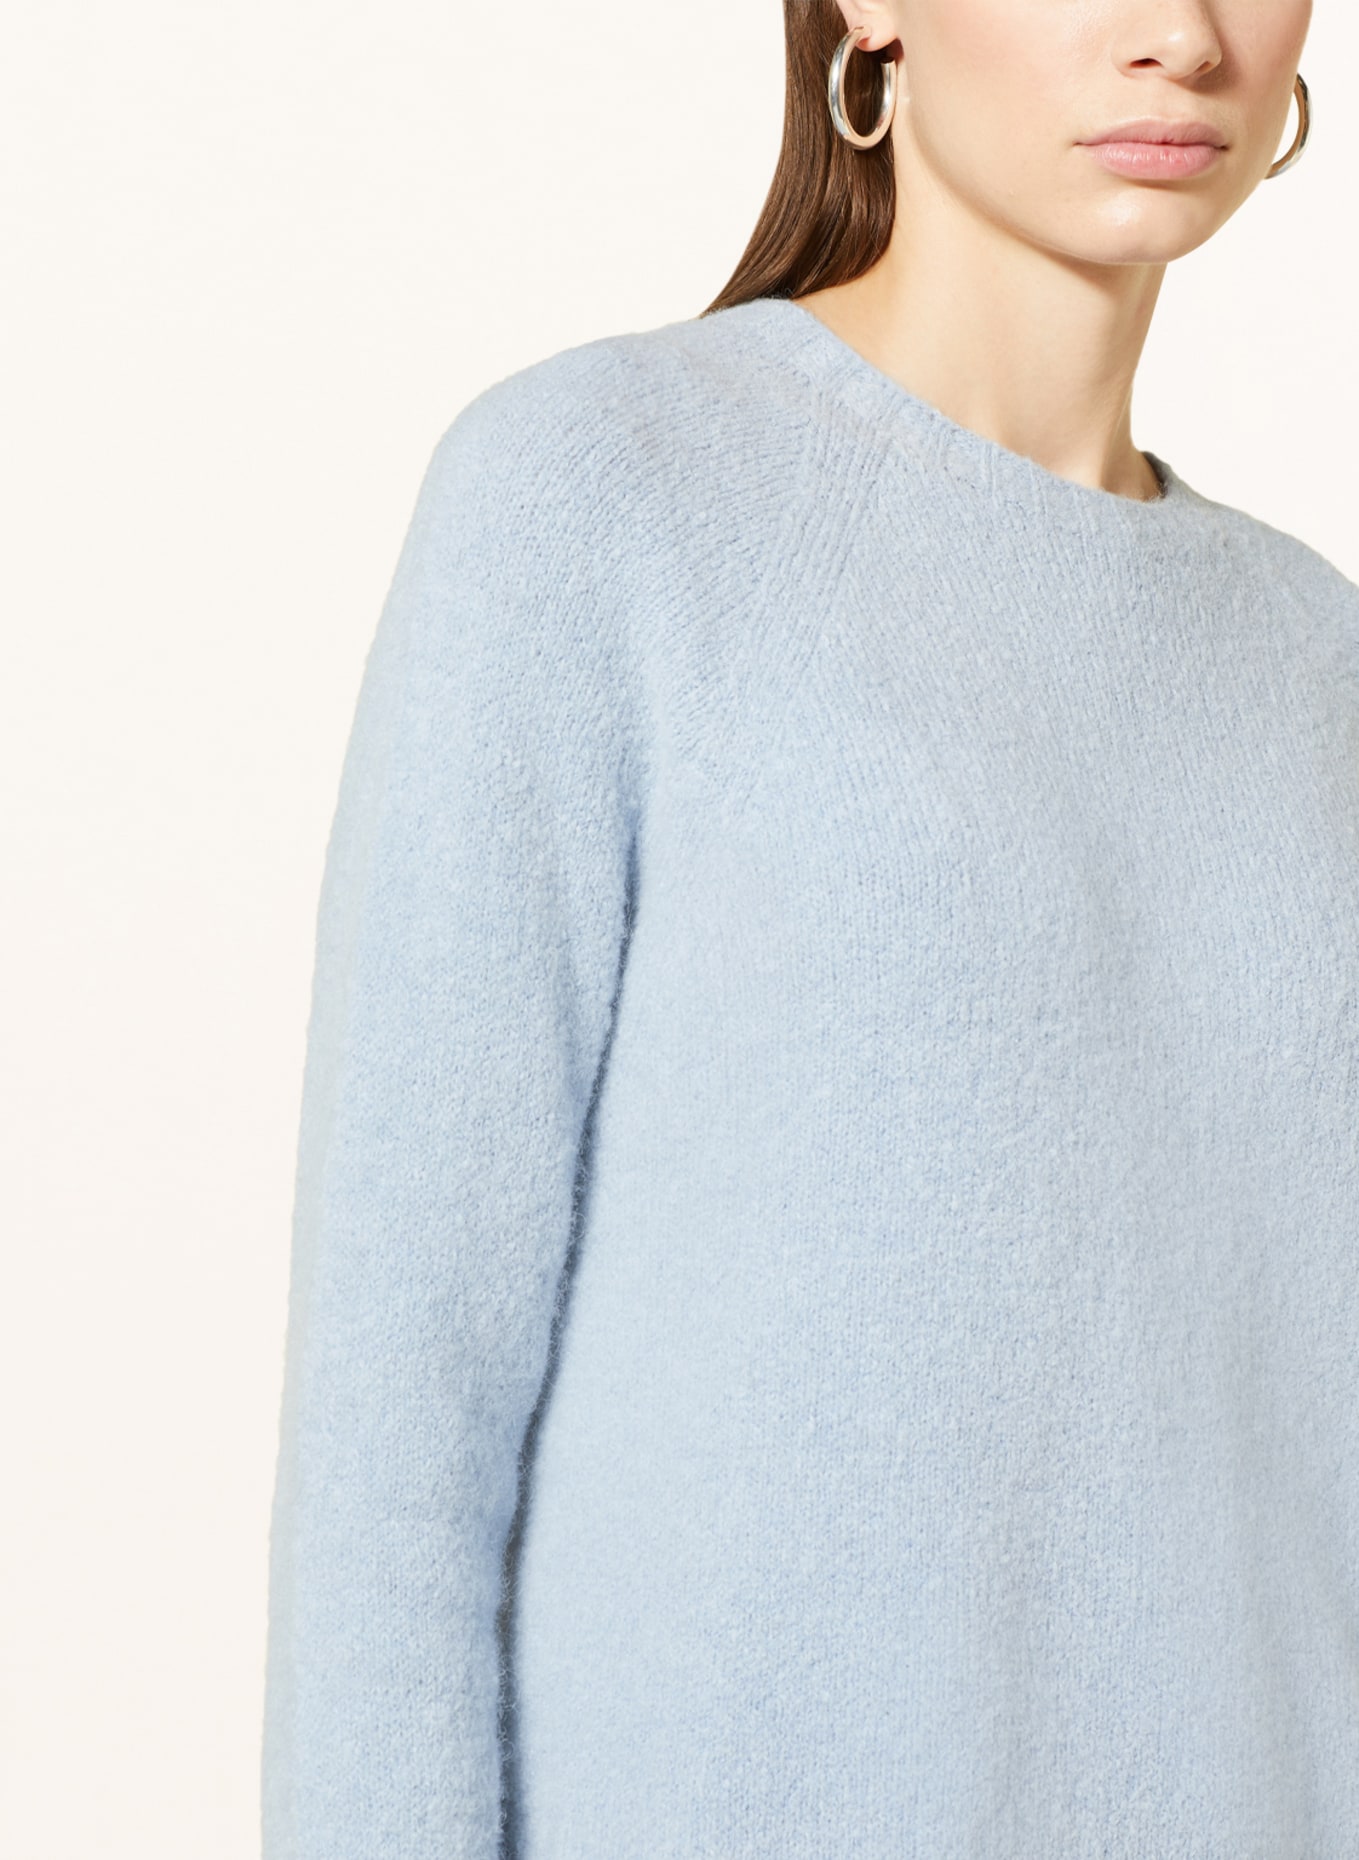 Blue Ghiacci sweater, Weekend Max Mara